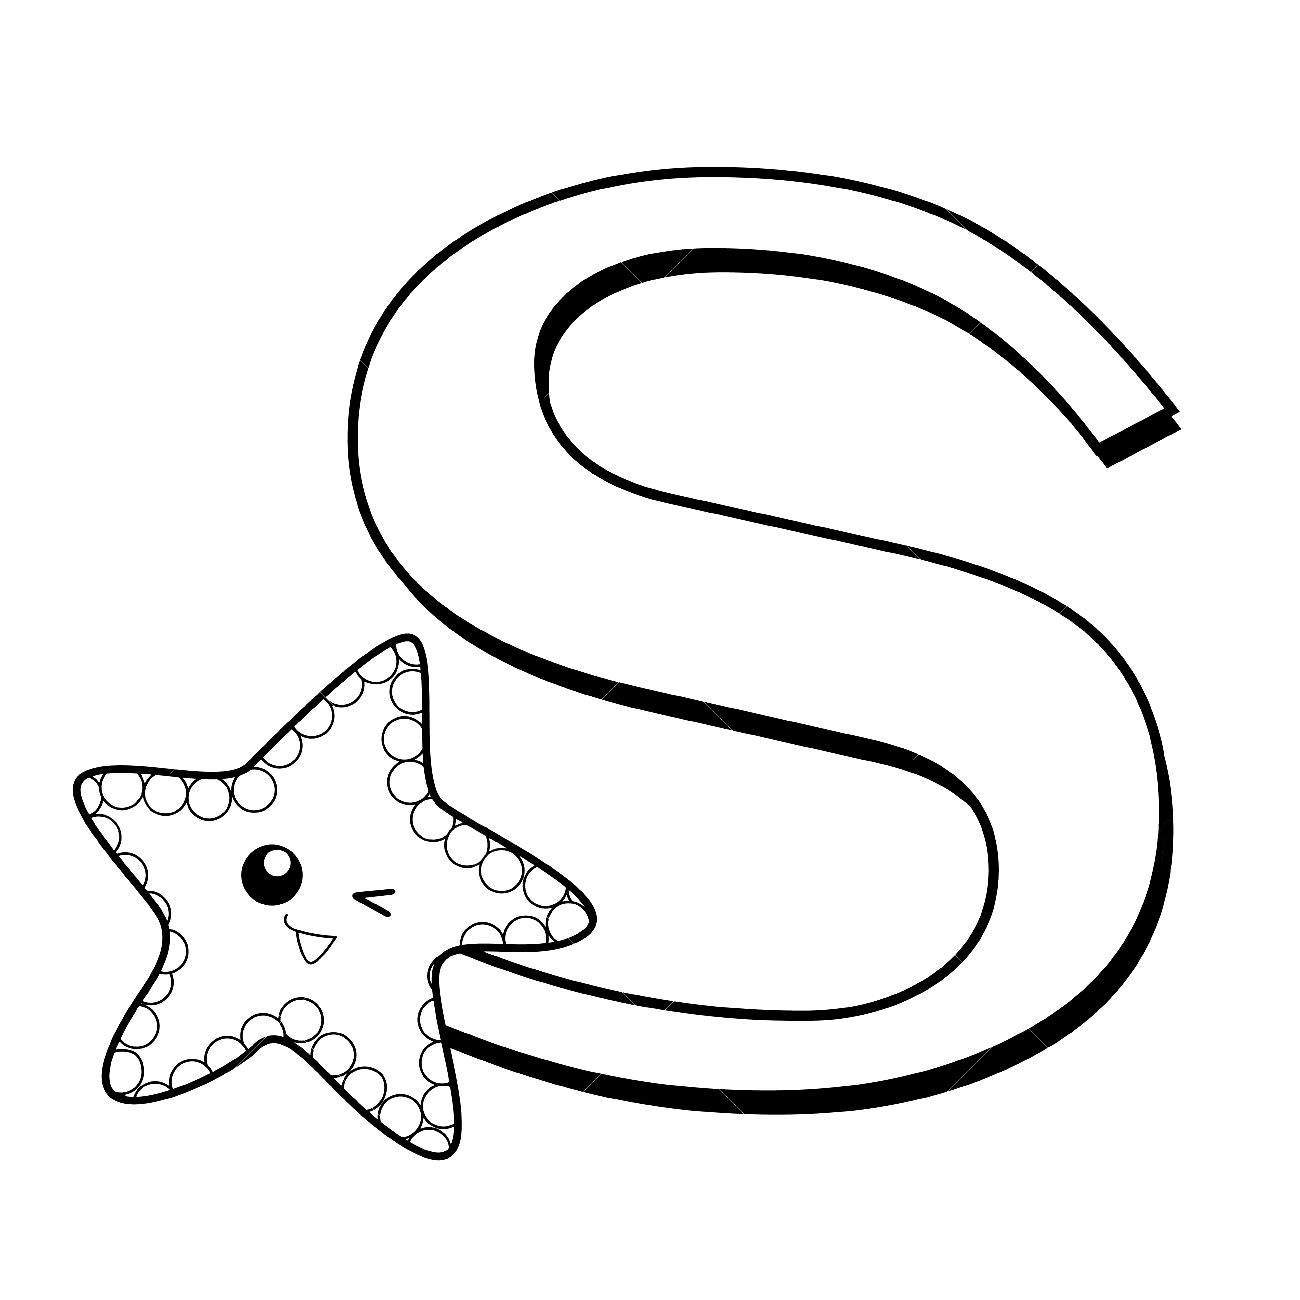 La s sta per stella marina da colorare